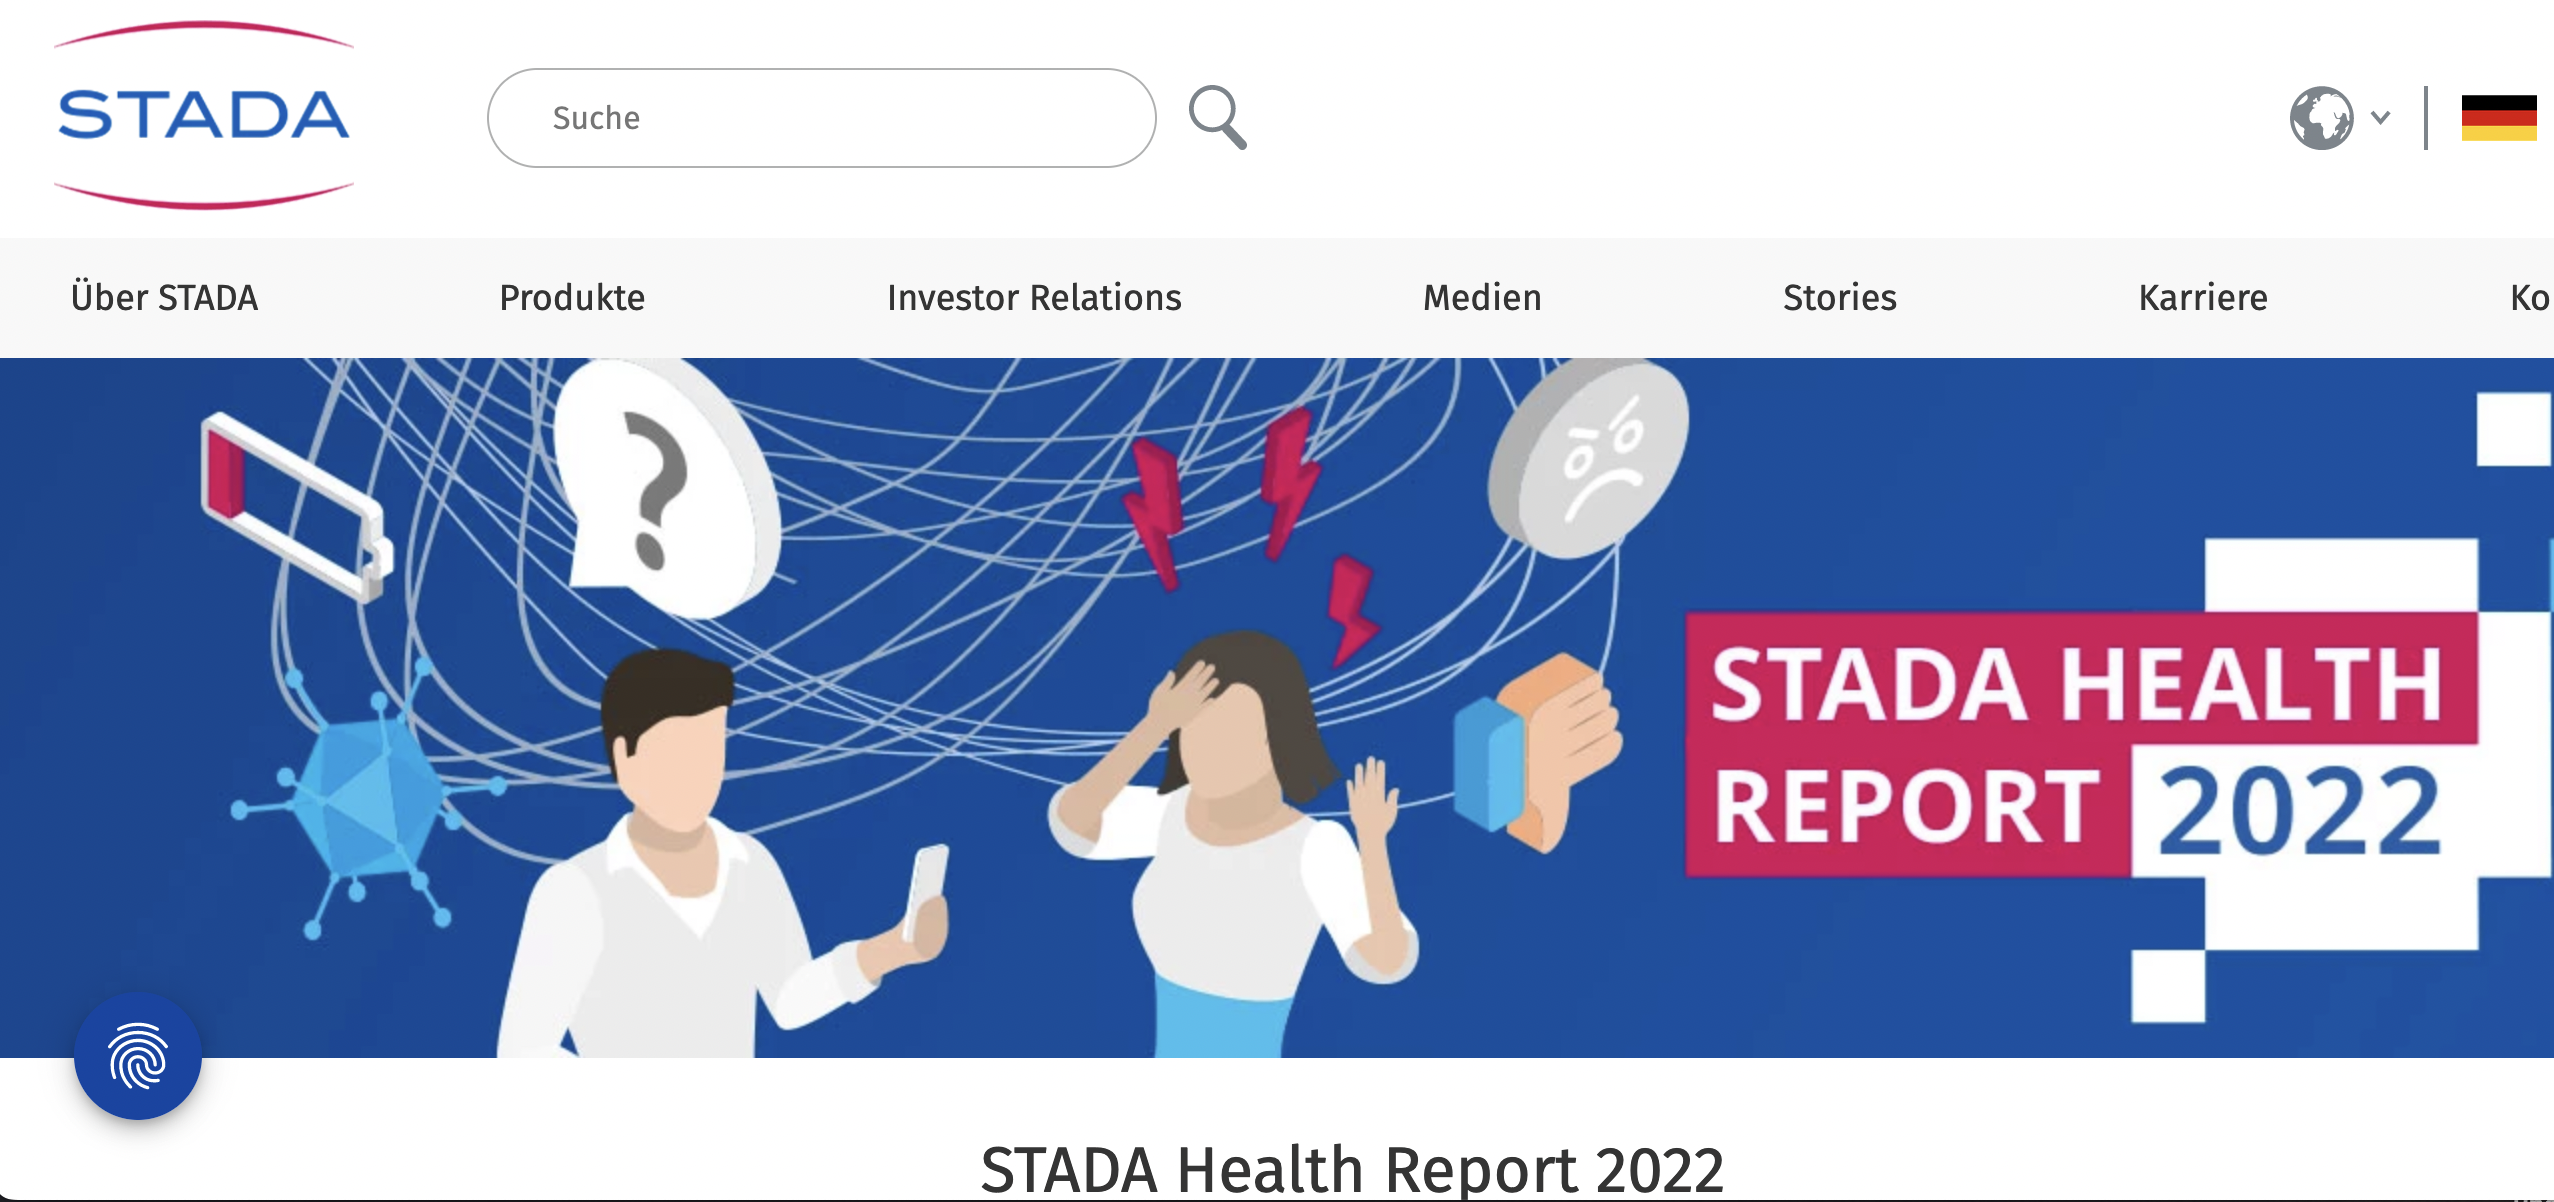 Stada Health Report 2022: Fokus Gesundheitsinformationen